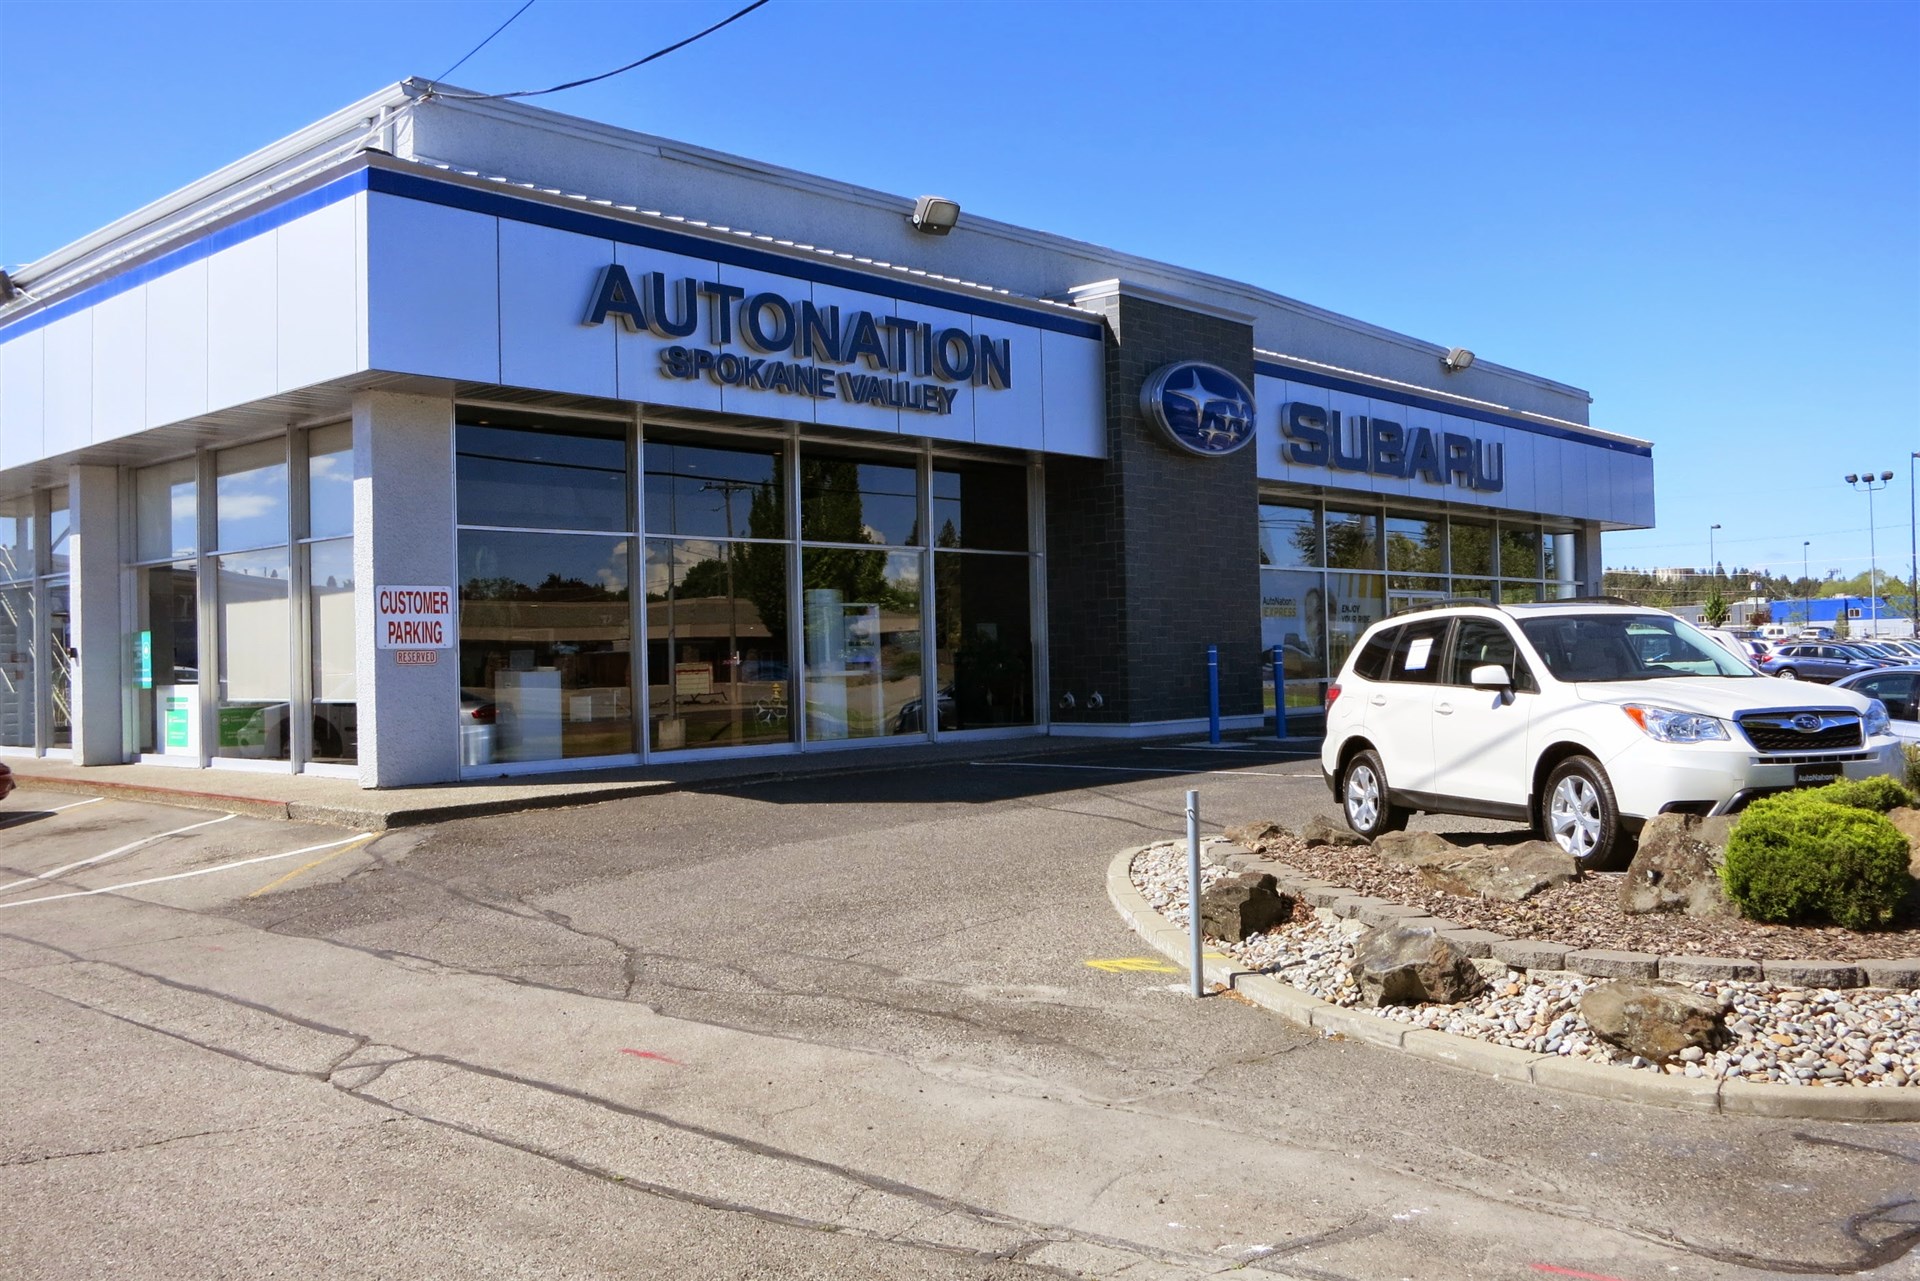 Autonation Subaru Spokane Valley